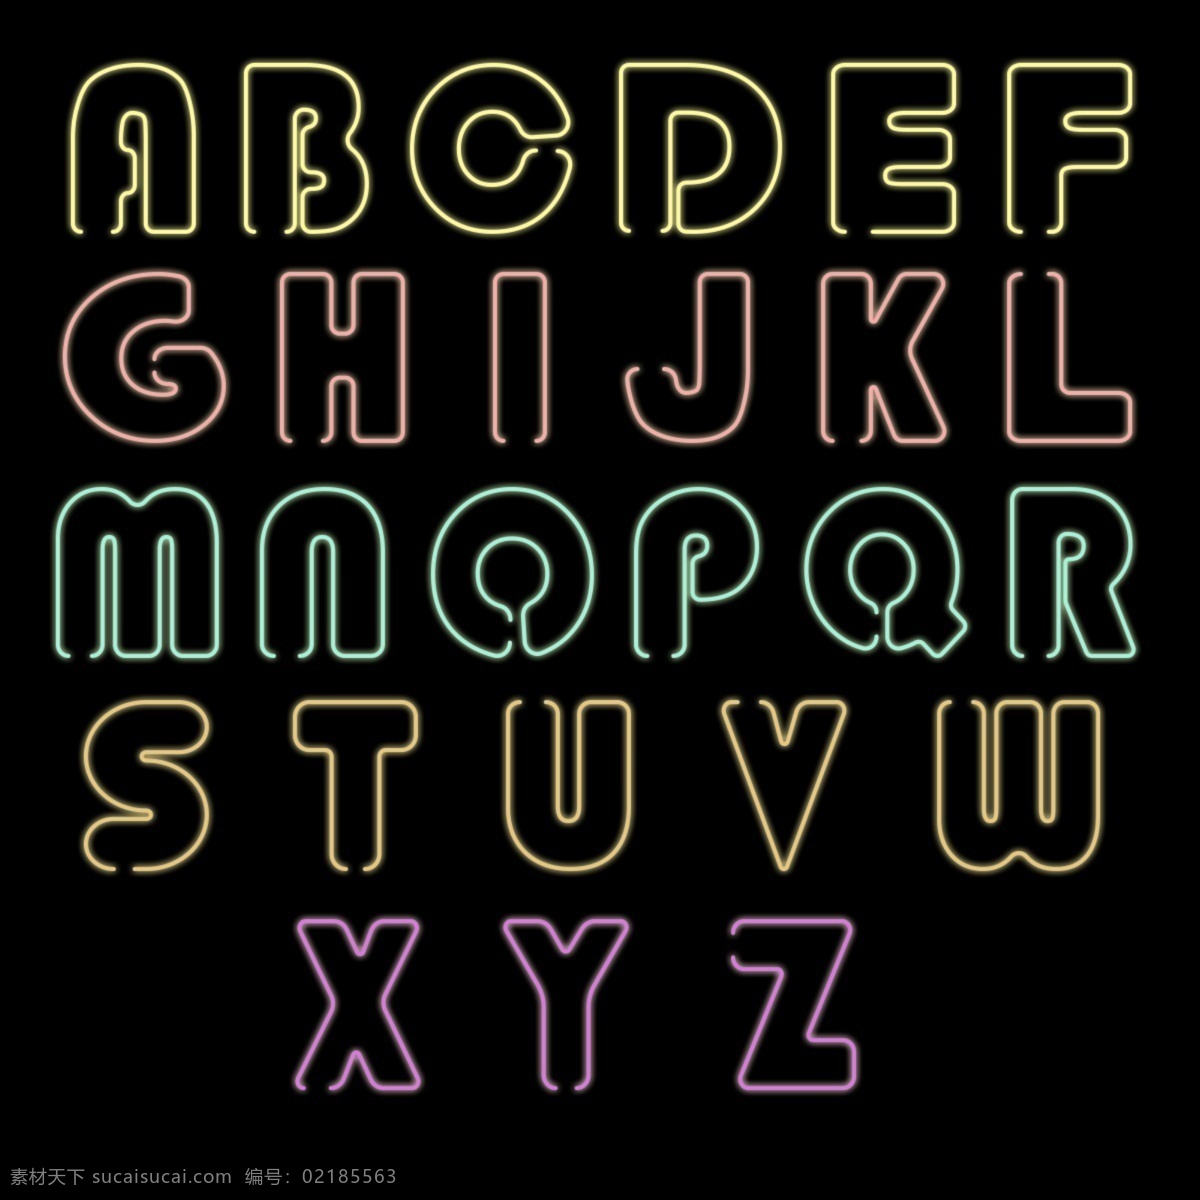 矢量发光字母 手绘发光字母 图层样式 大写字母 英文字母 创意字母 艺术字母 时尚字母 现代字母 简洁字母 简约字母 描边字母 绚丽字母 炫酷字母 线条字母 曲线字母 数字字母 标志图标 其他图标